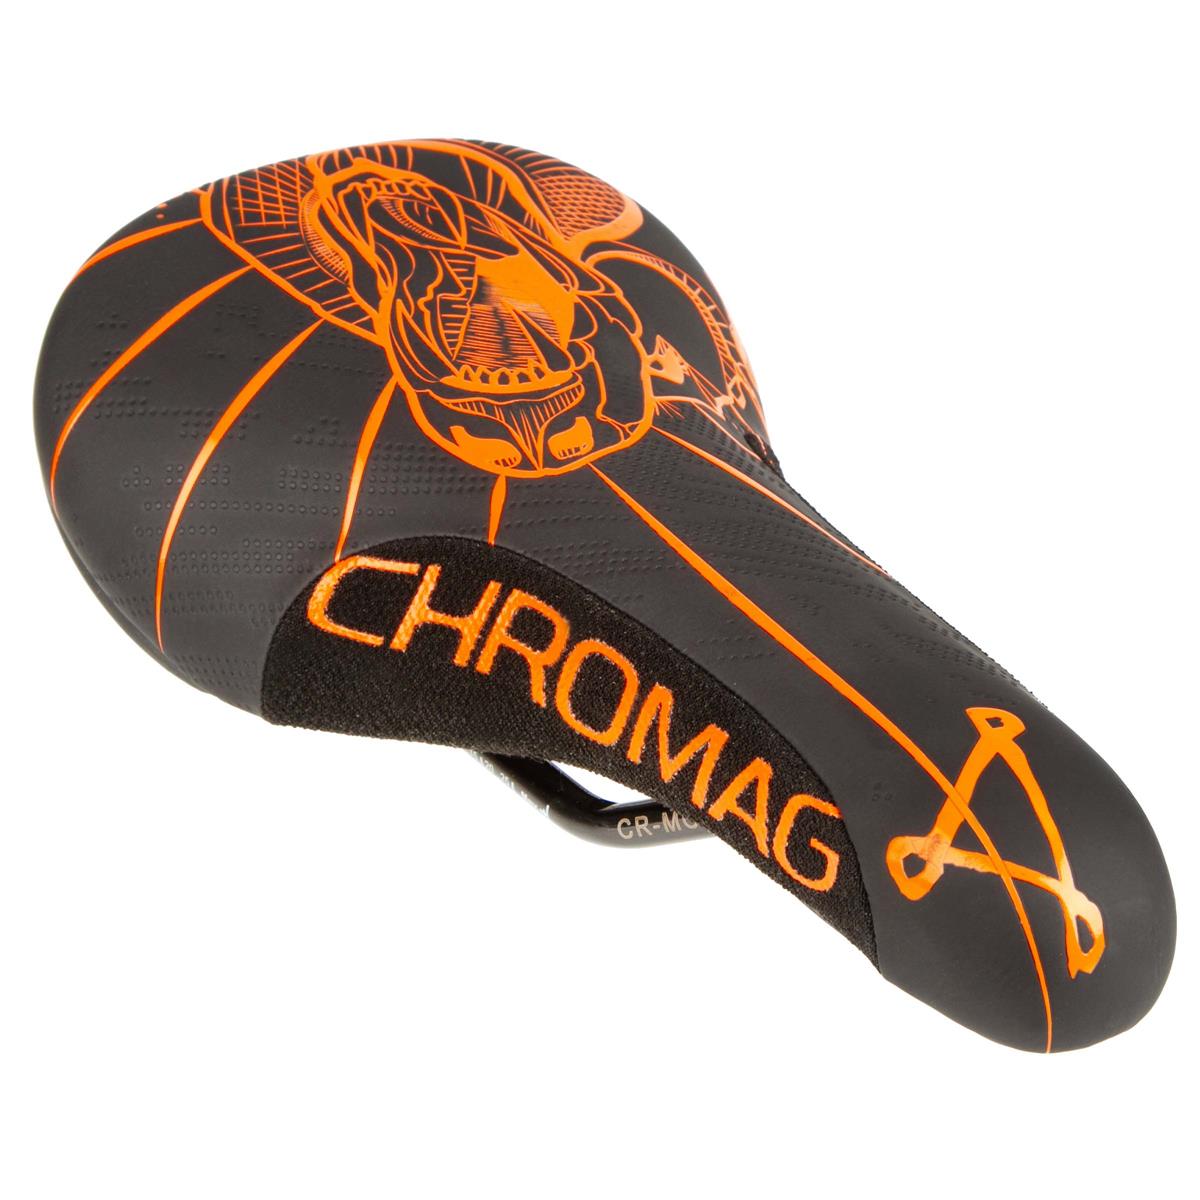 Chromag Sattel Overture 2019 243 x 136 mm, Schwarz/Tight Orange